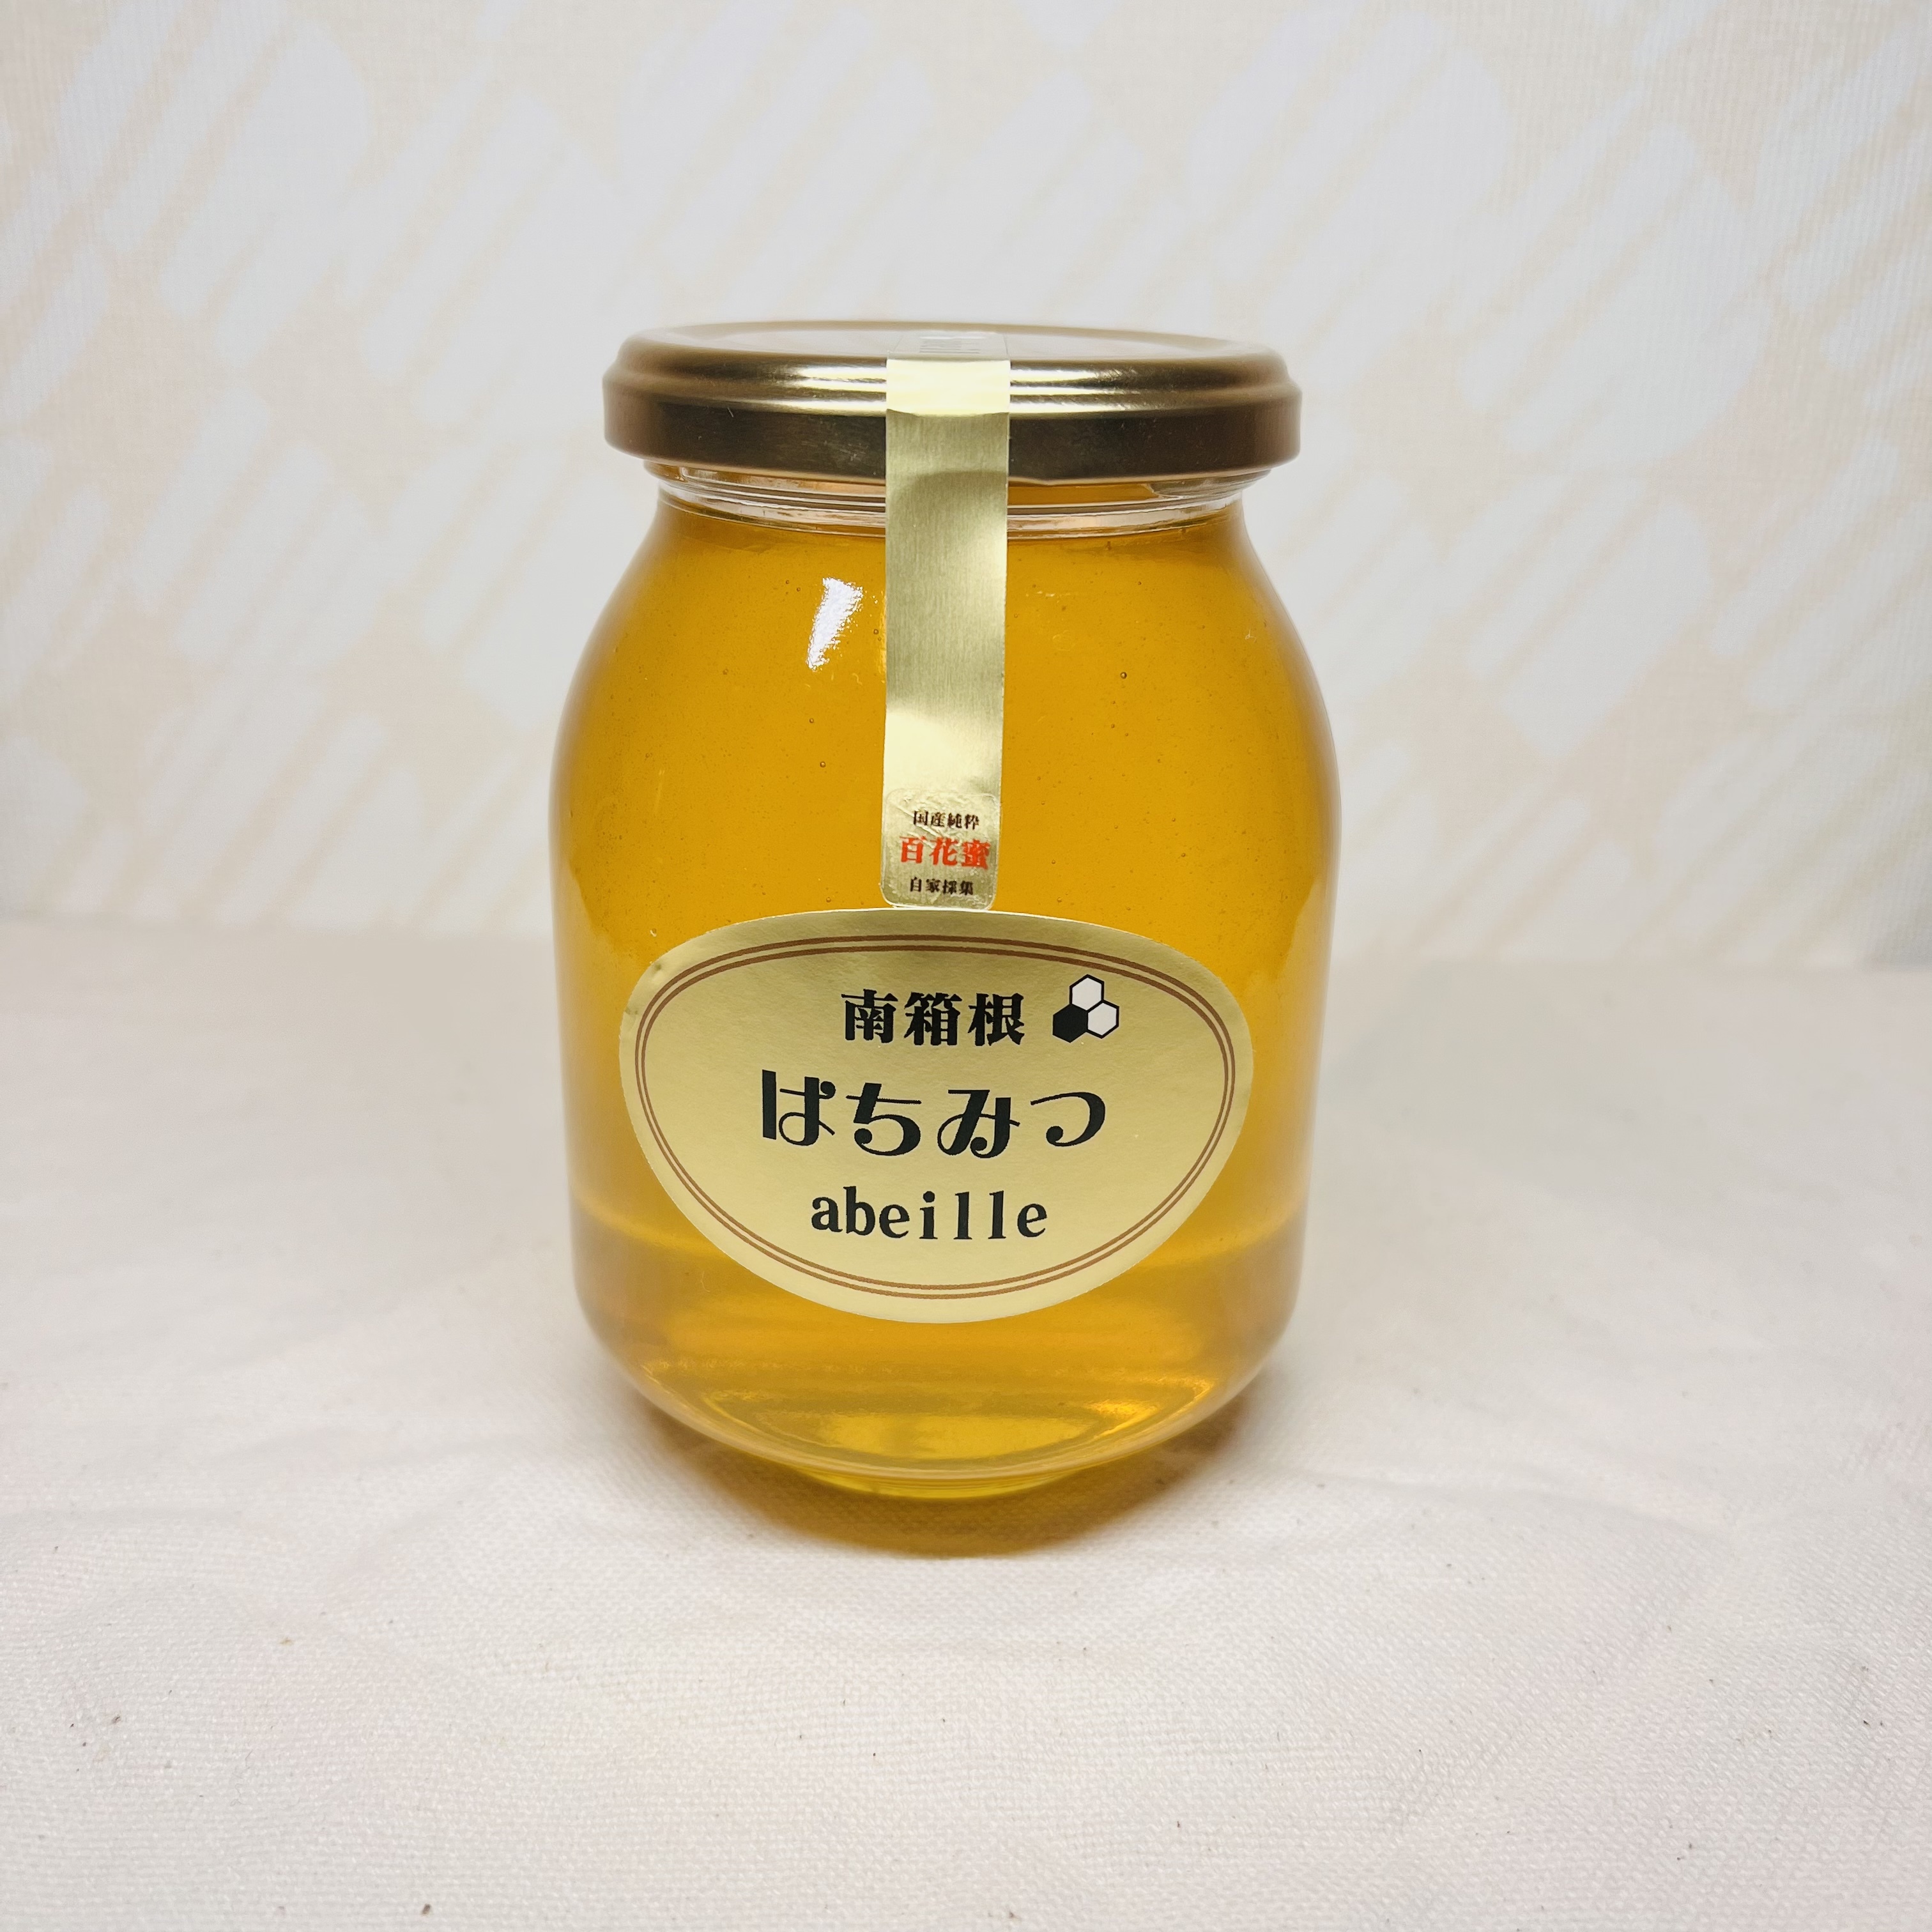 12kg 完熟 生蜂蜜 国産蜂蜜 純粋蜂蜜 無添加 非加熱 缶 新品 新蜜 - 調味料